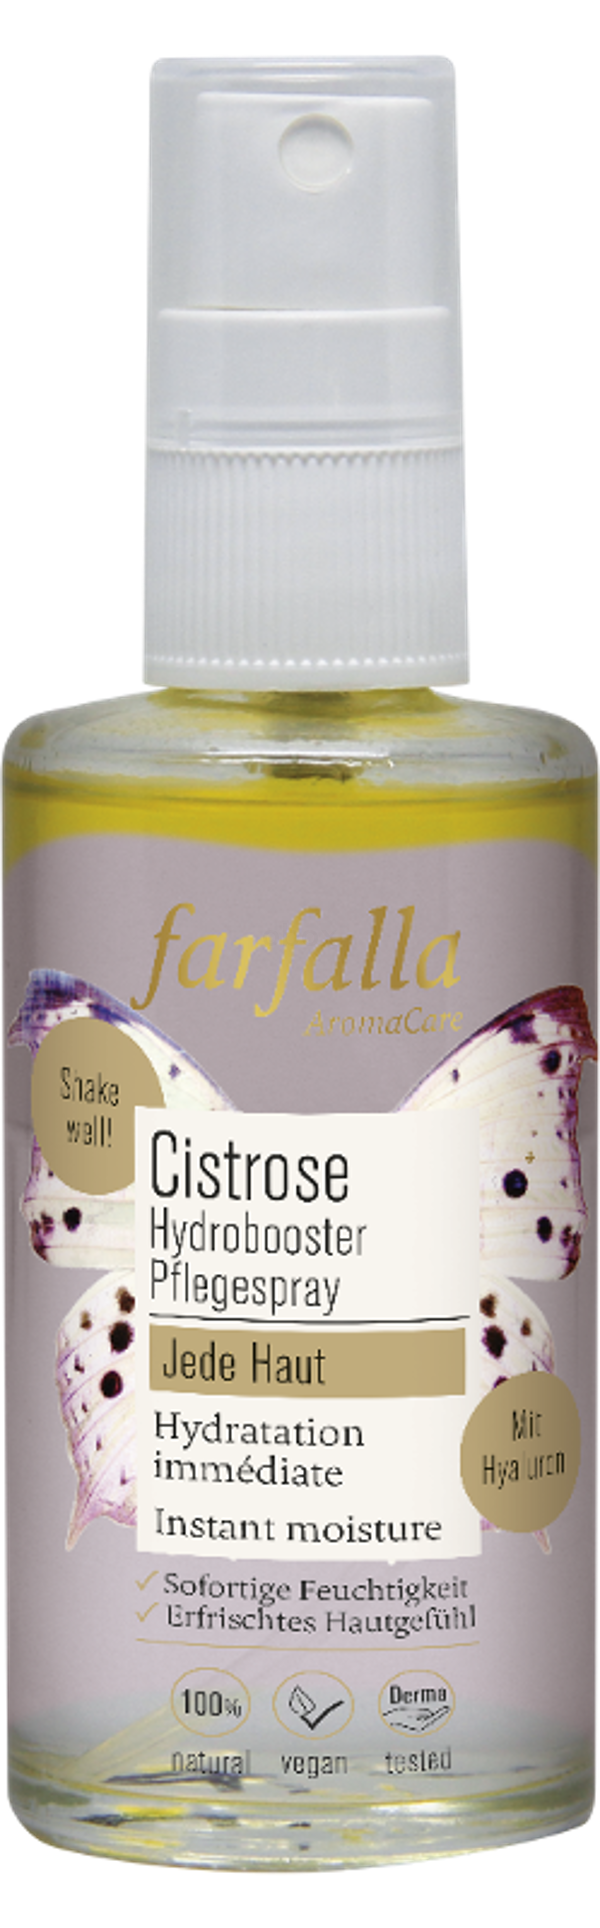 Produktfoto zu Cistrose Hydrobooster Pflegespray